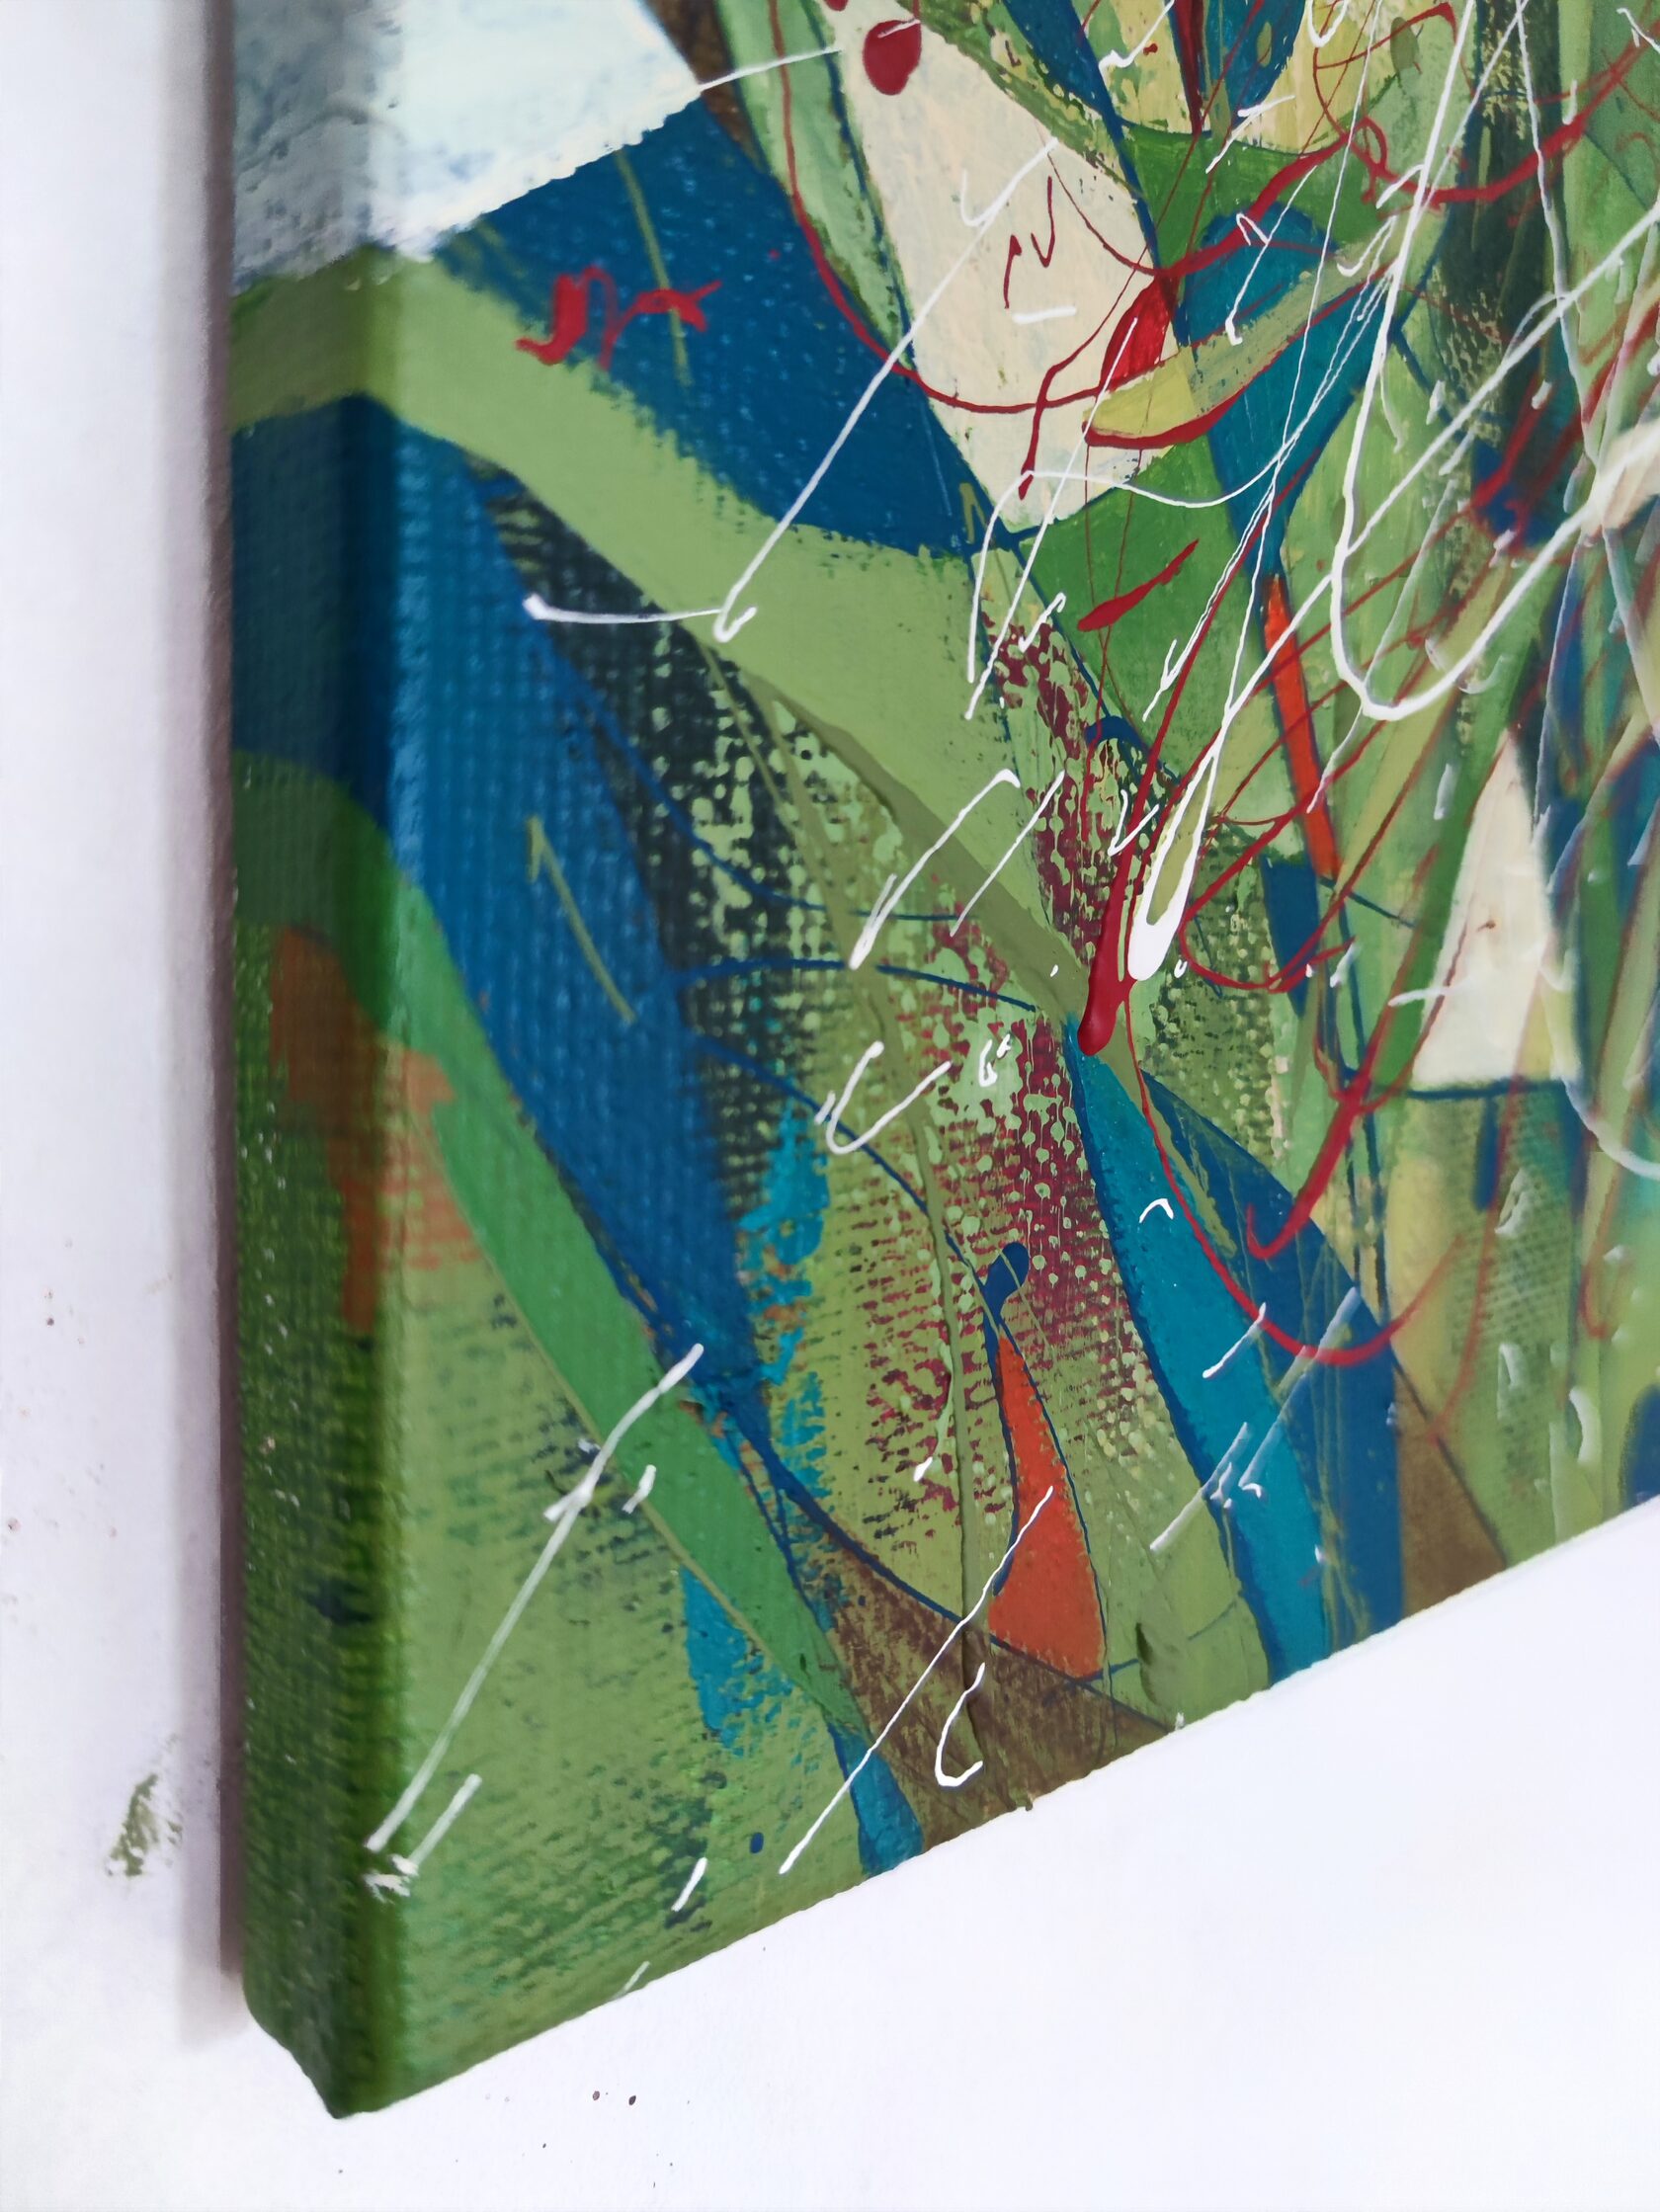 Фрагмент ярко-зеленой картины на льняном холсте, красные, зеленые, белые линии. Размер 60*60см, написана в технике абстрактного экспрессионизма известной современной художницей Машей Брайт